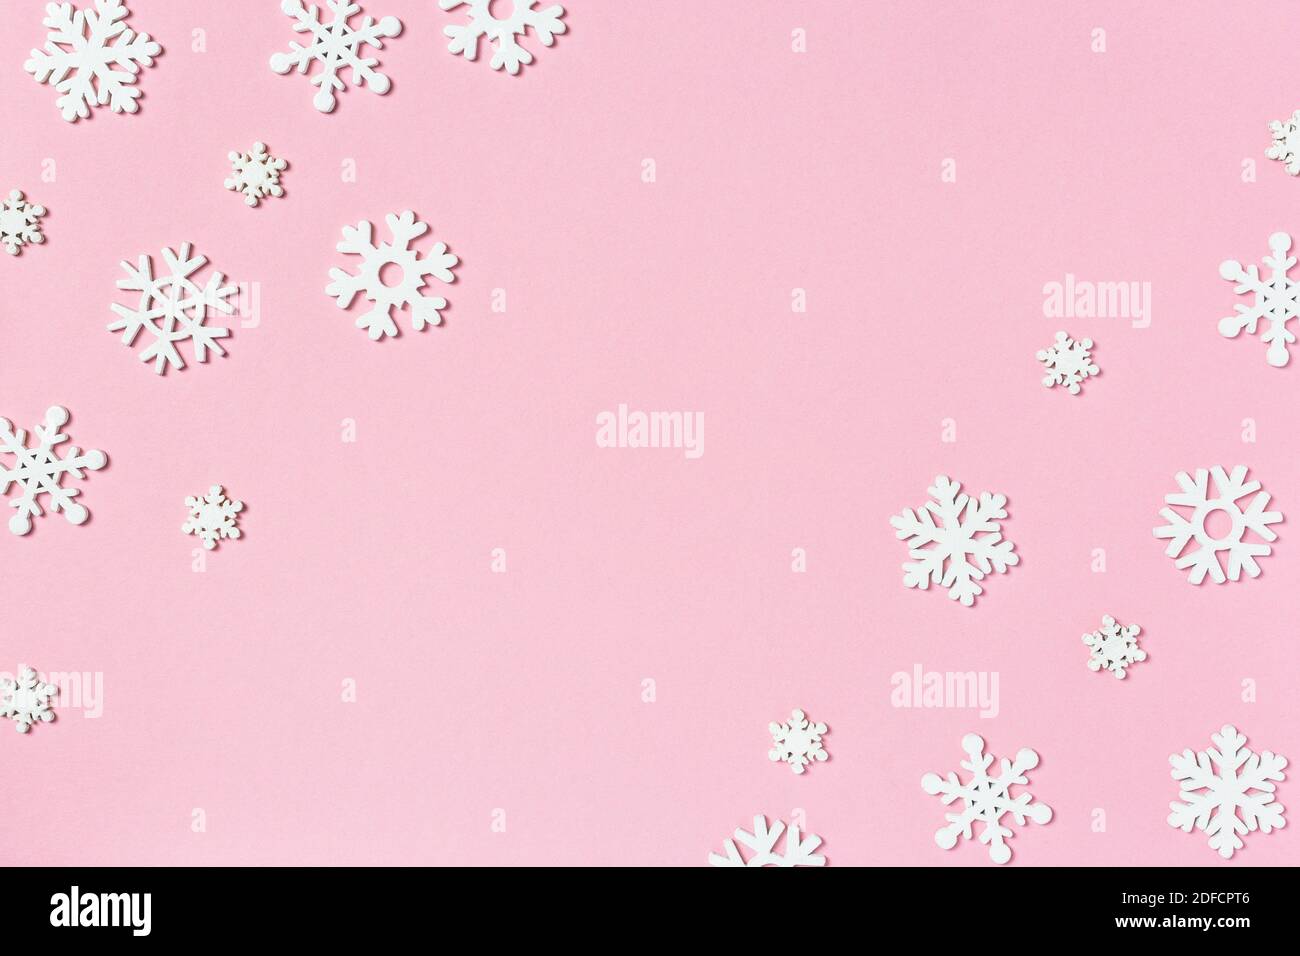 Composition de Noël en flocons de neige sur fond rose pastel. Concept d'hiver. Flat lay, vue de dessus, espace de copie. Banque D'Images